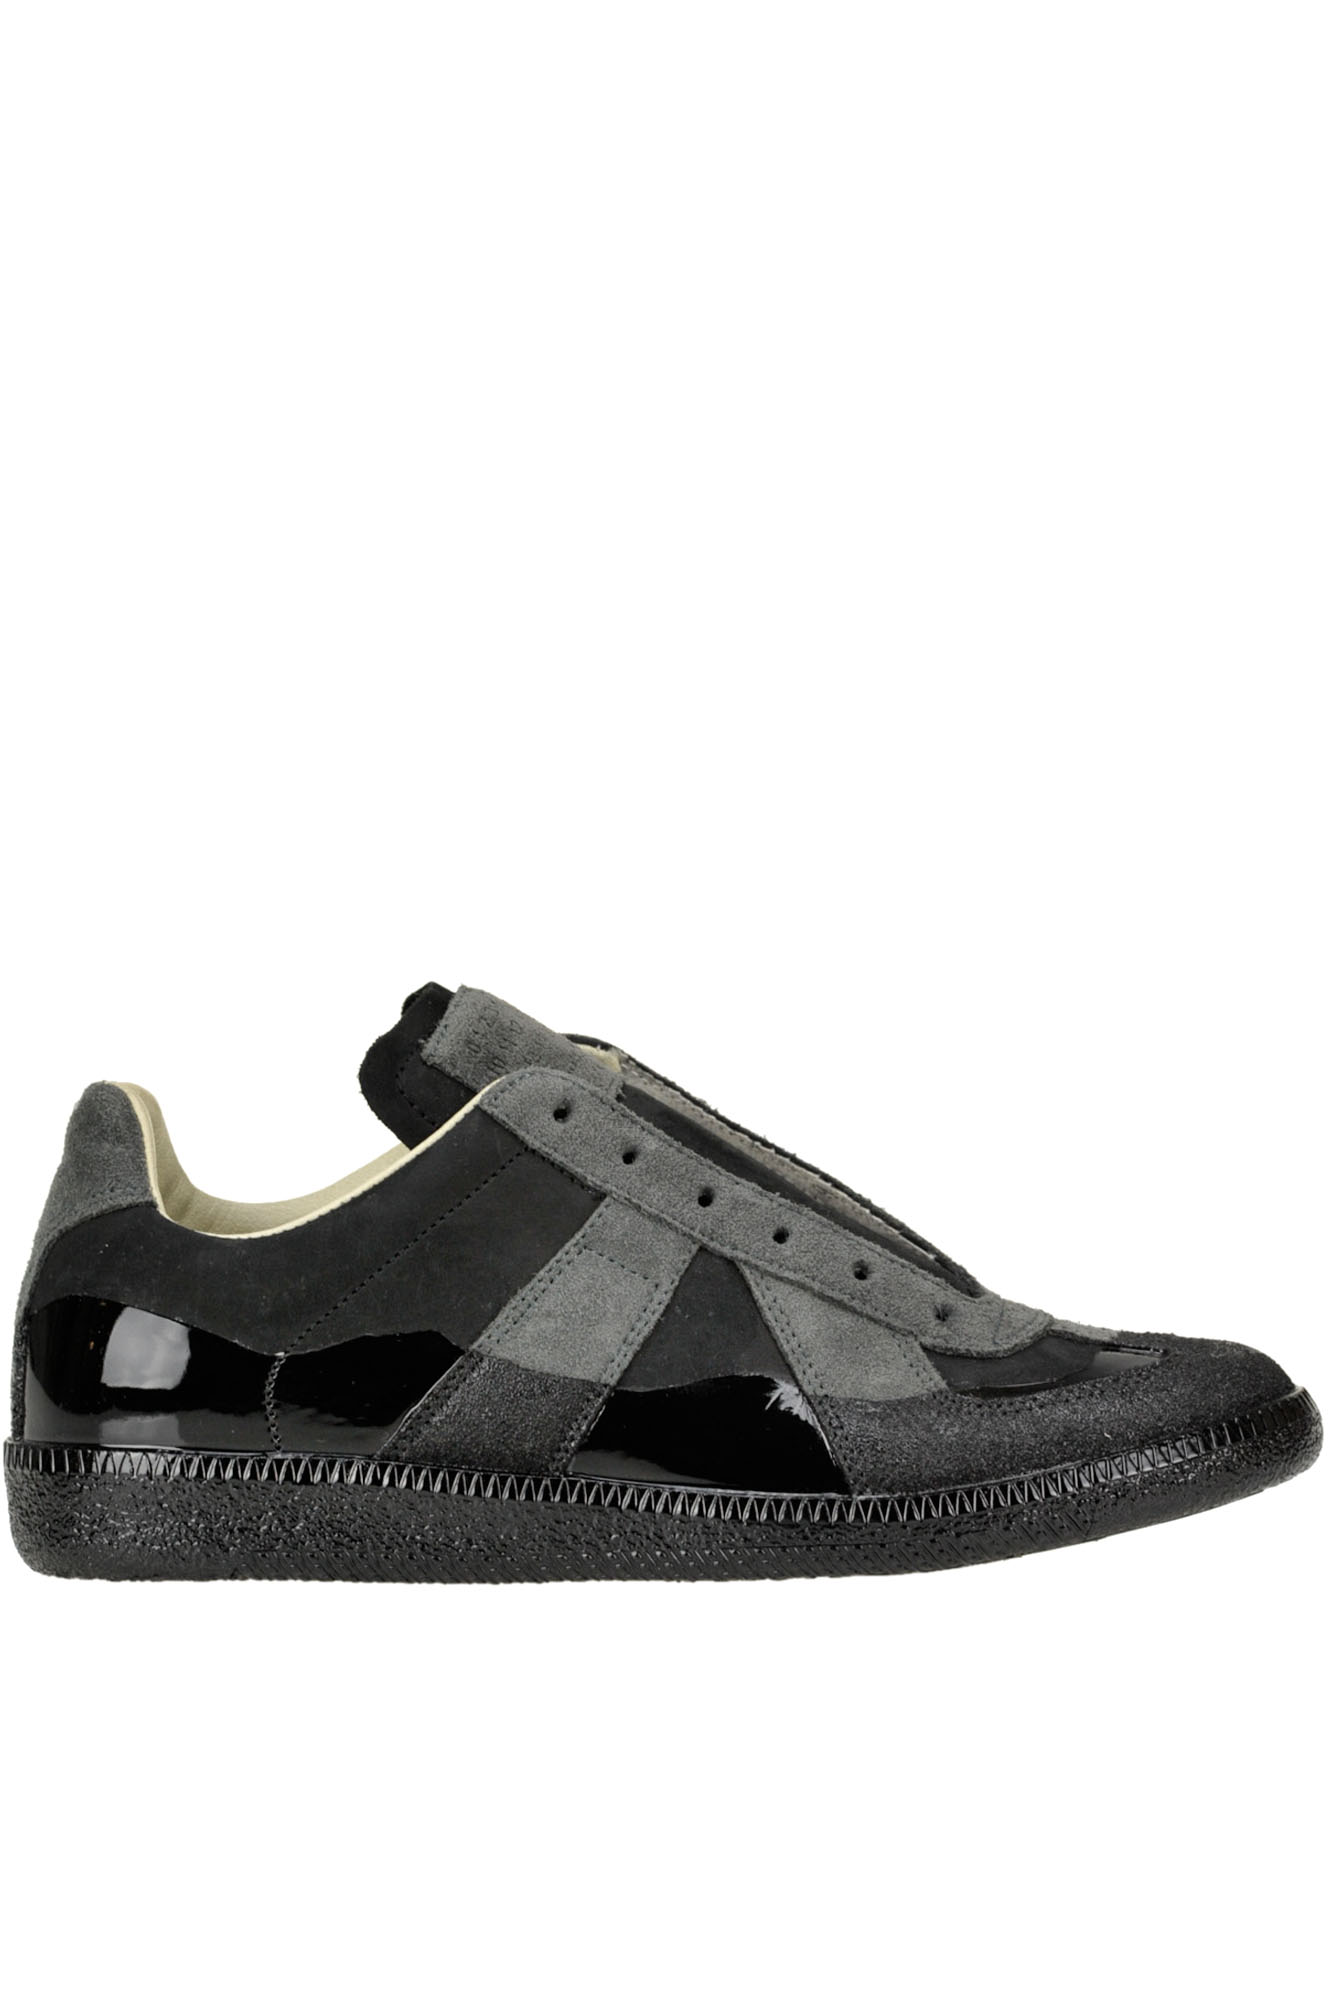 Maison Margiela Suede Slip-on Sneakers In Black